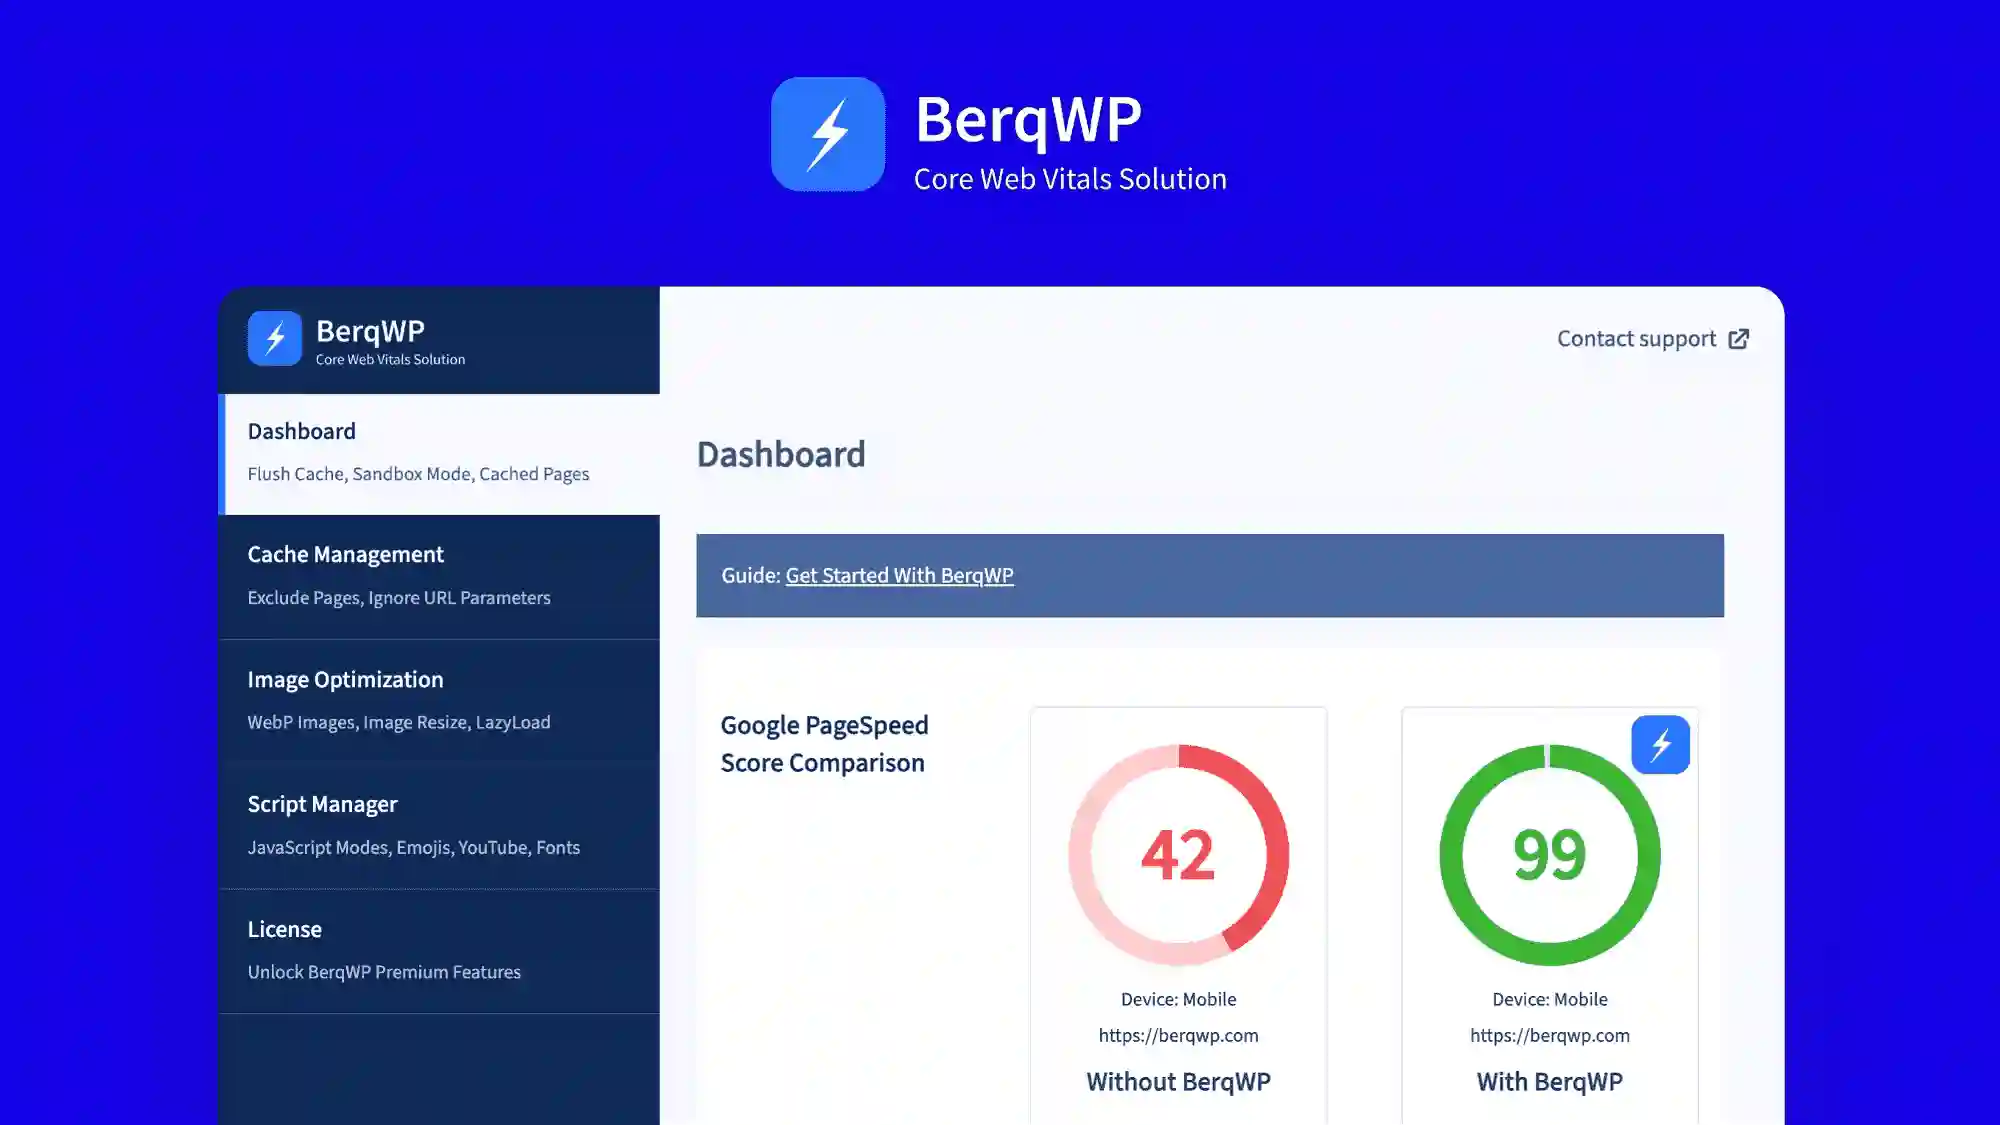 BerqWP – WordPress Speed & Core Web Vitals Optimization Plugin